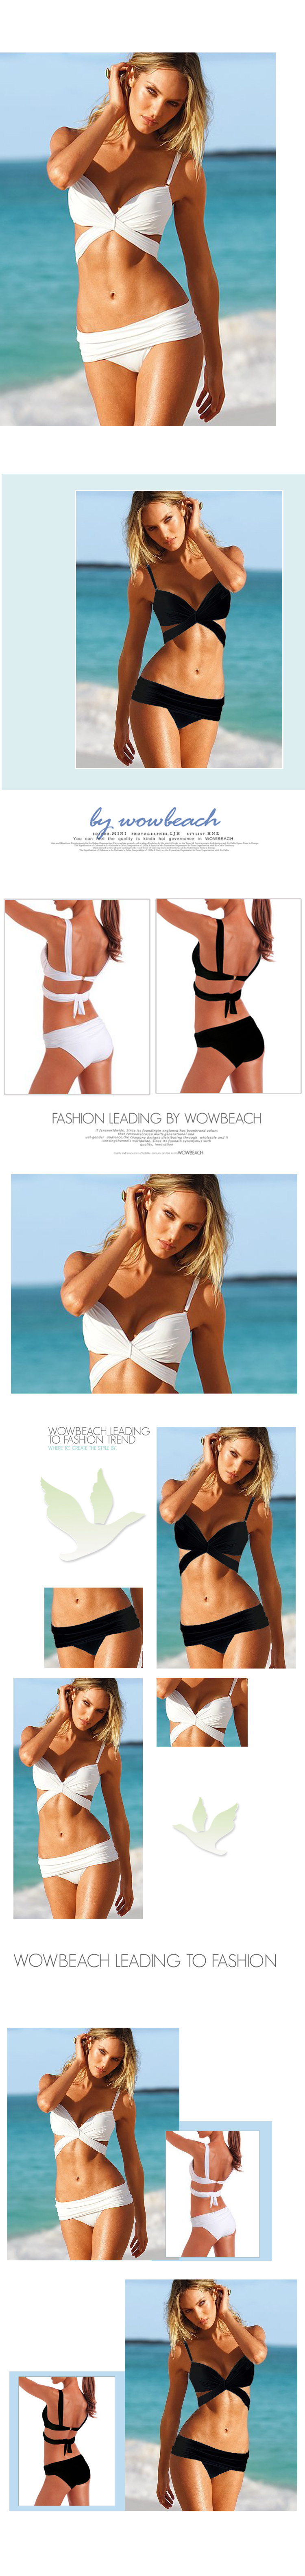 Bikini hàng chất lượng có sẵn giá rẻ nhất HCM - 13